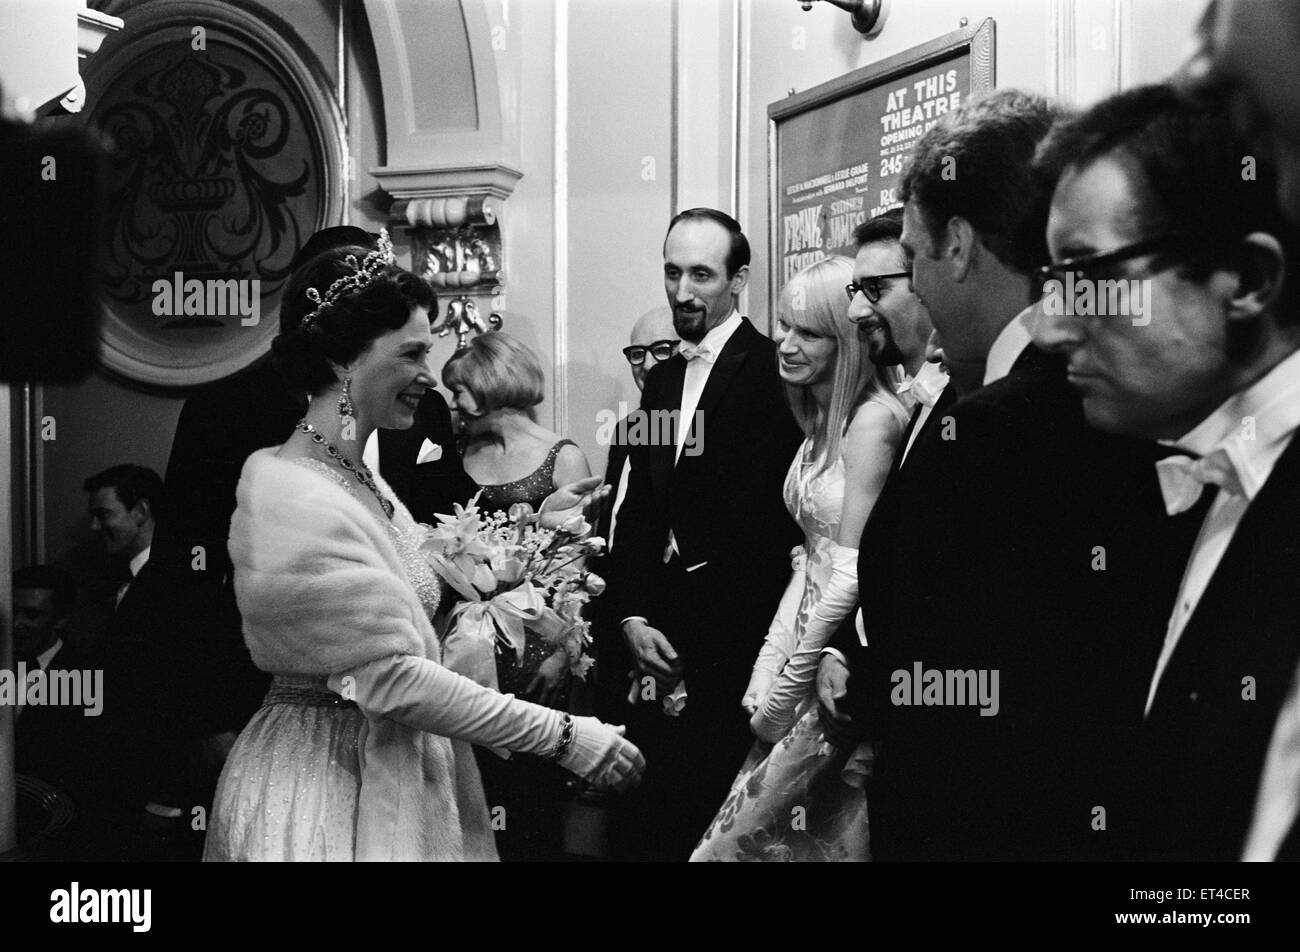 El rendimiento real de variedades, London Palladium, el 8 de noviembre de 1965. La reina Isabel II hace su camino hacia abajo la línea de presentación. Reunión cantantes populares Pedro, Pablo y María, y el actor cómico Peter Sellers. Foto de stock